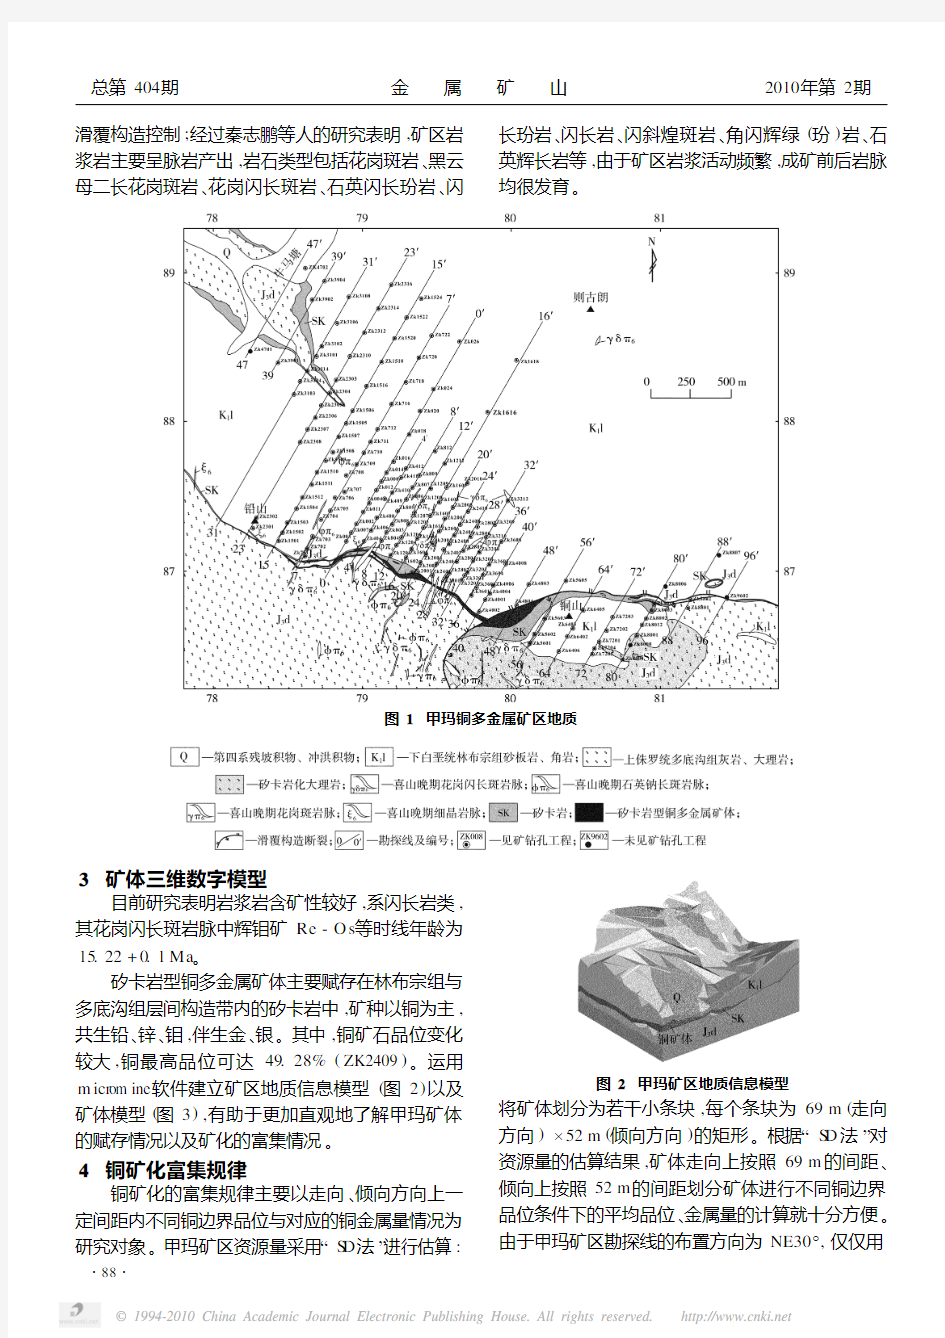 西藏甲玛铜多金属矿床铜矿化富集规律研究及应用